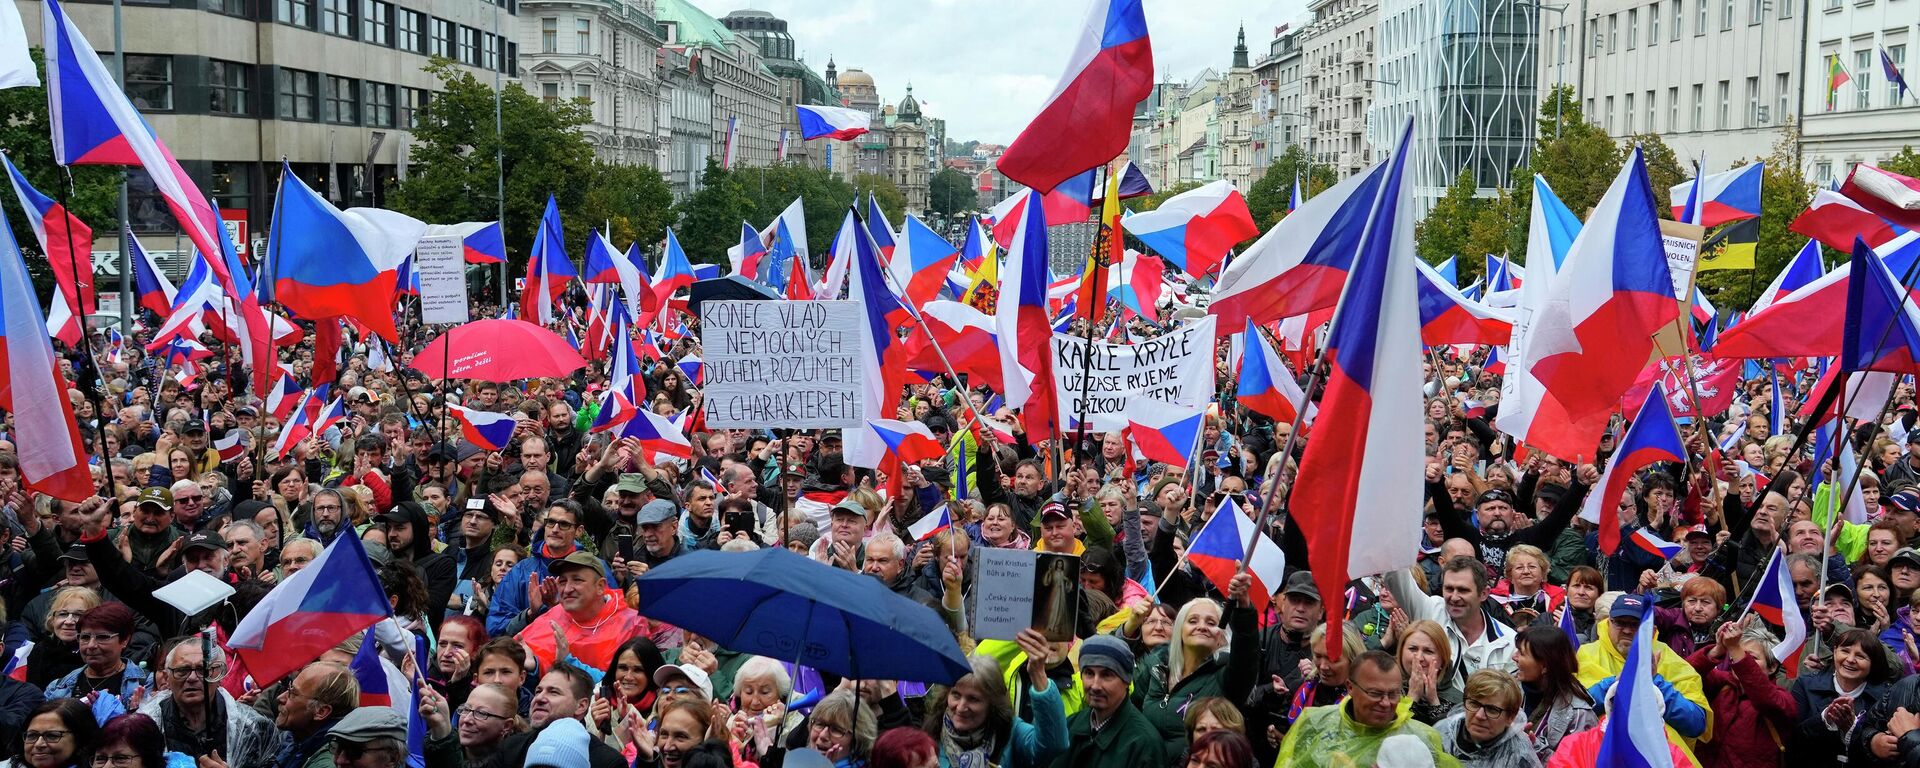 Çekya’nın başkenti Prag’da meydanlarda toplanan göstericiler, artan enerji fiyatlarına tepki göstererek Rusya'dan doğalgaz ithalatı yapılması için doğrudan müzakerelerin başlatılması çağrısıyla protesto düzenliyor. - Sputnik Türkiye, 1920, 28.10.2022